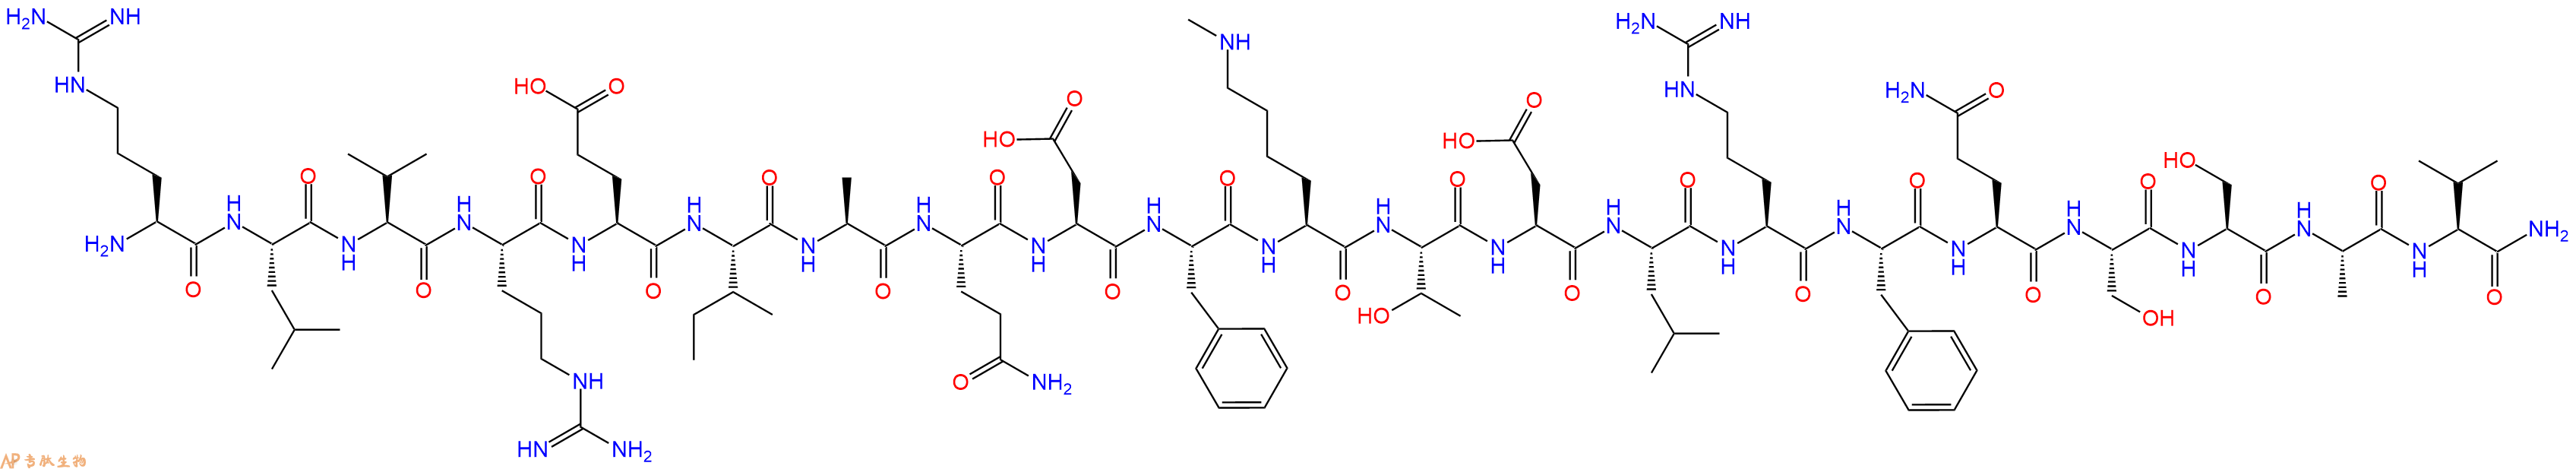 专肽生物产品组蛋白肽段[Lys(Me)79]-Histone H3(69-89), H3K79(Me1)